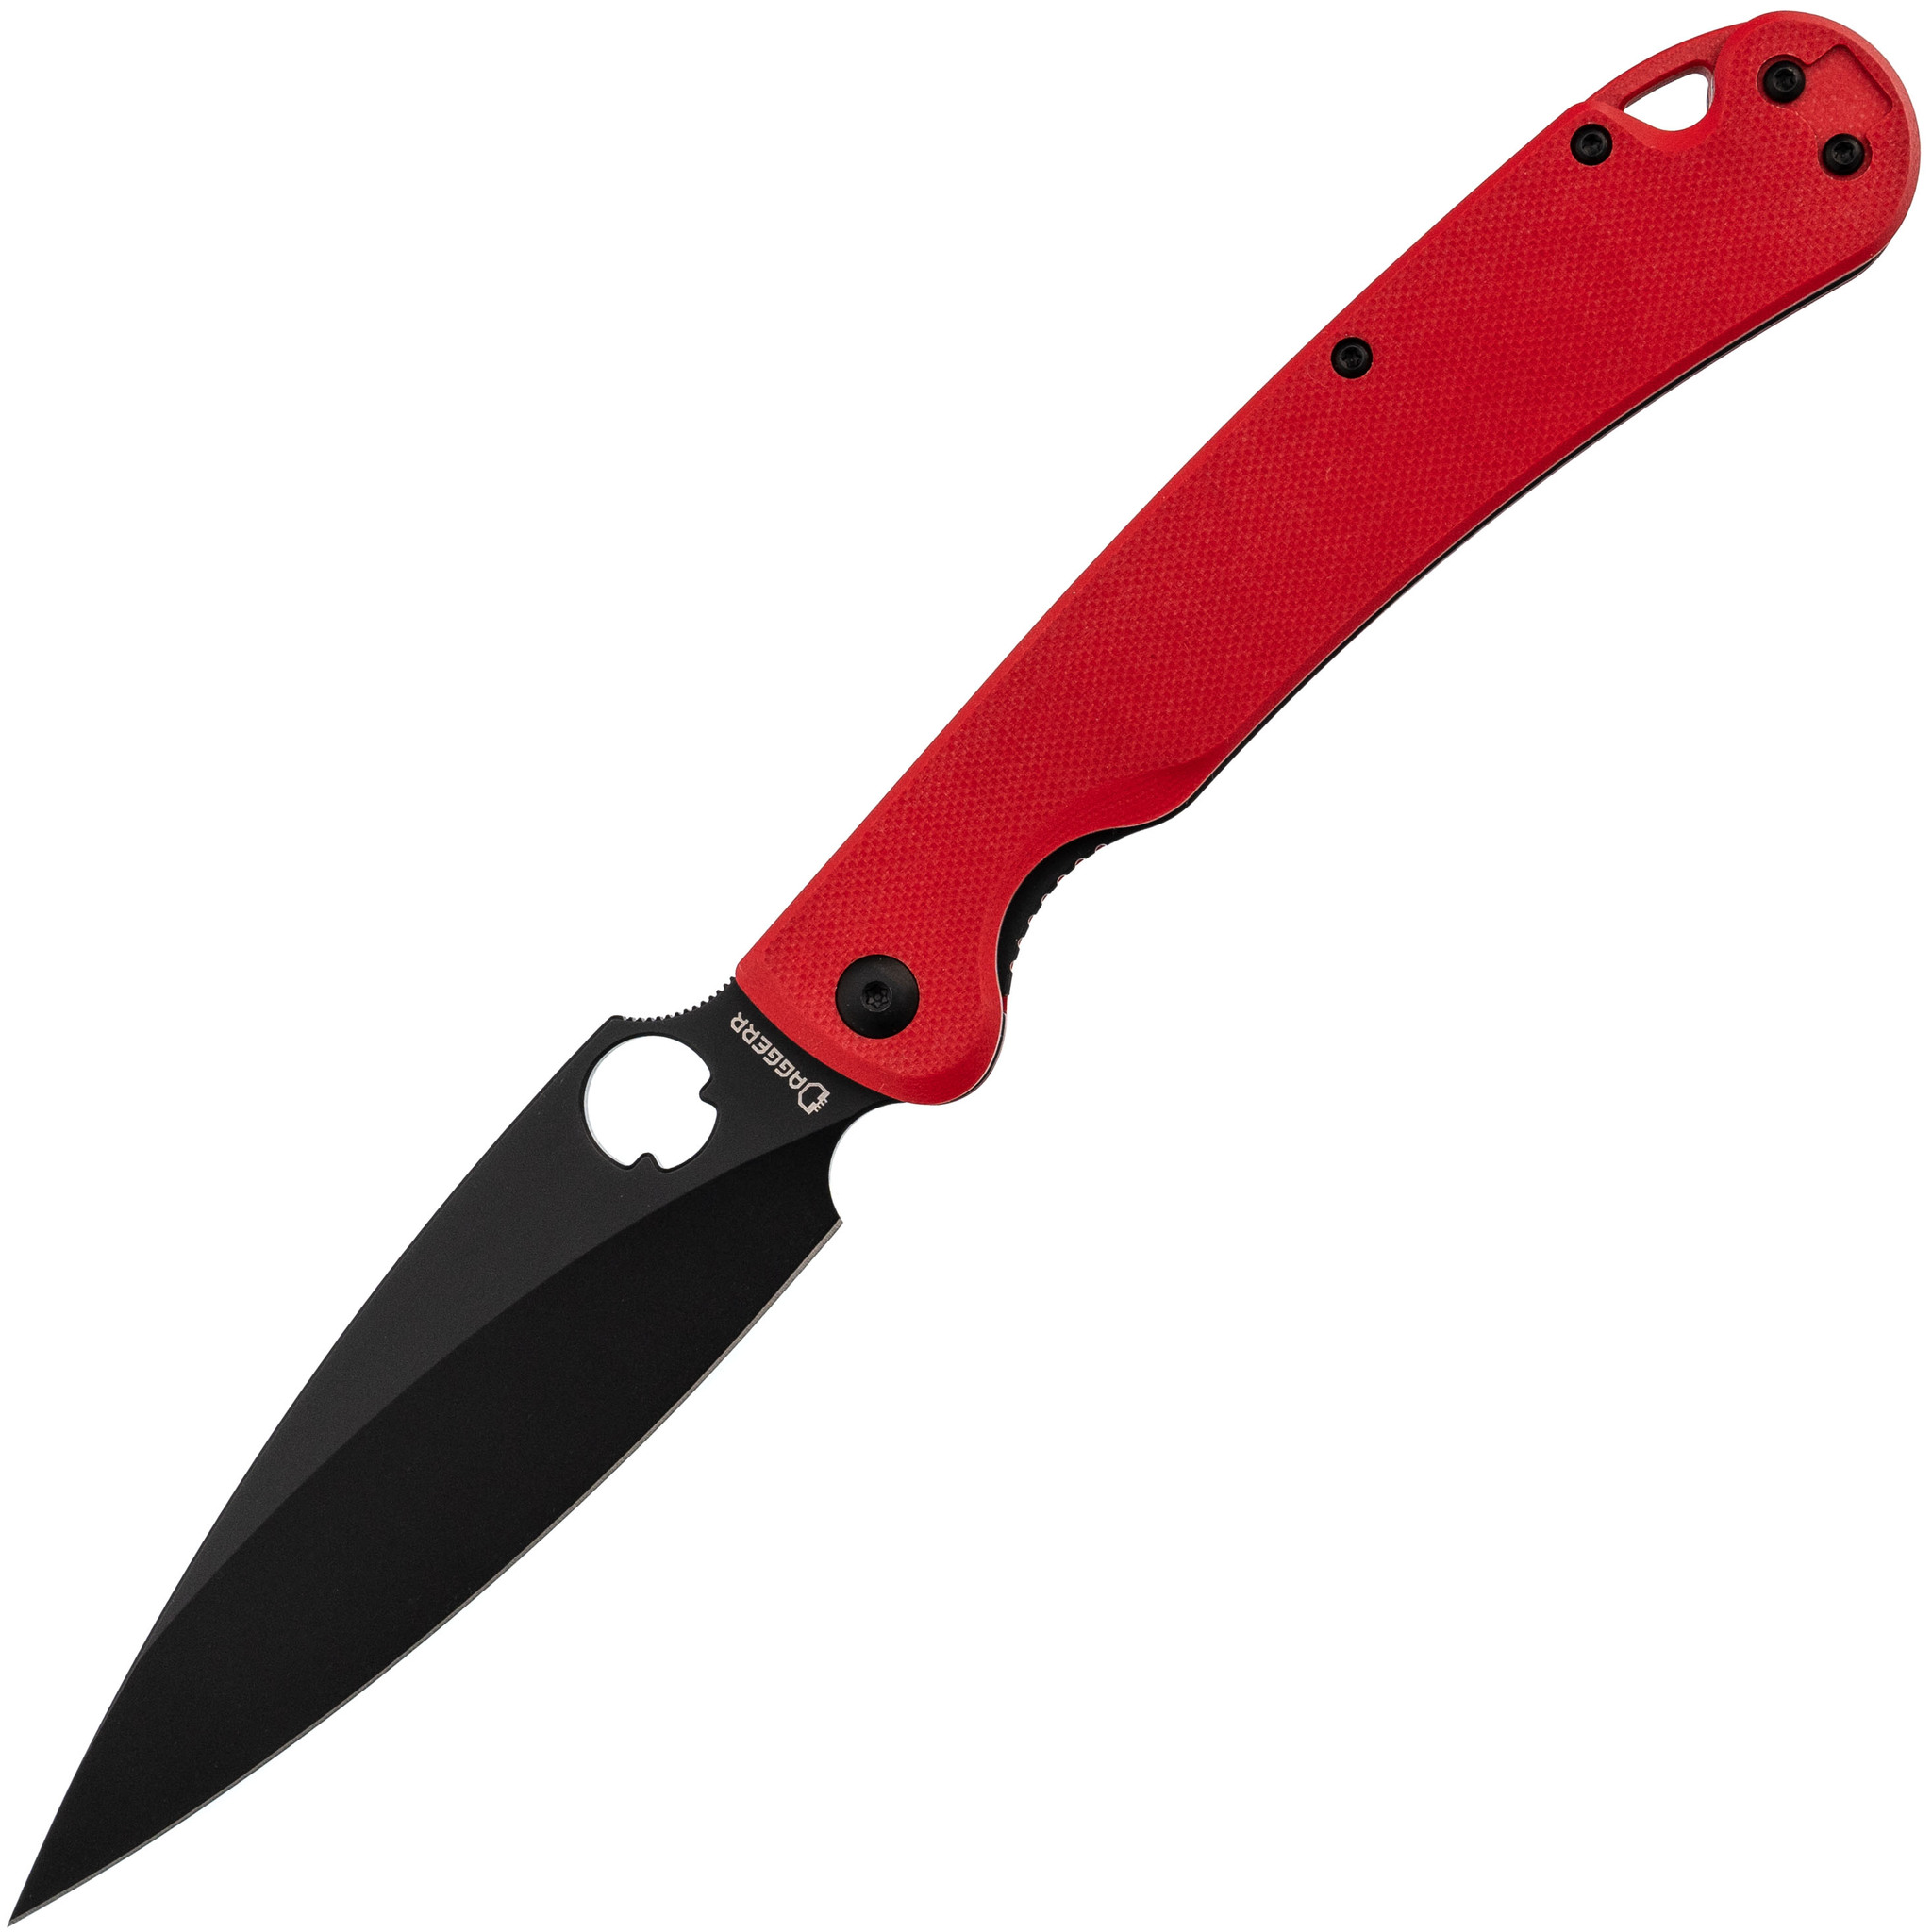 Складной нож Daggerr Sting XL red BW DLC, сталь D2, рукоять G10